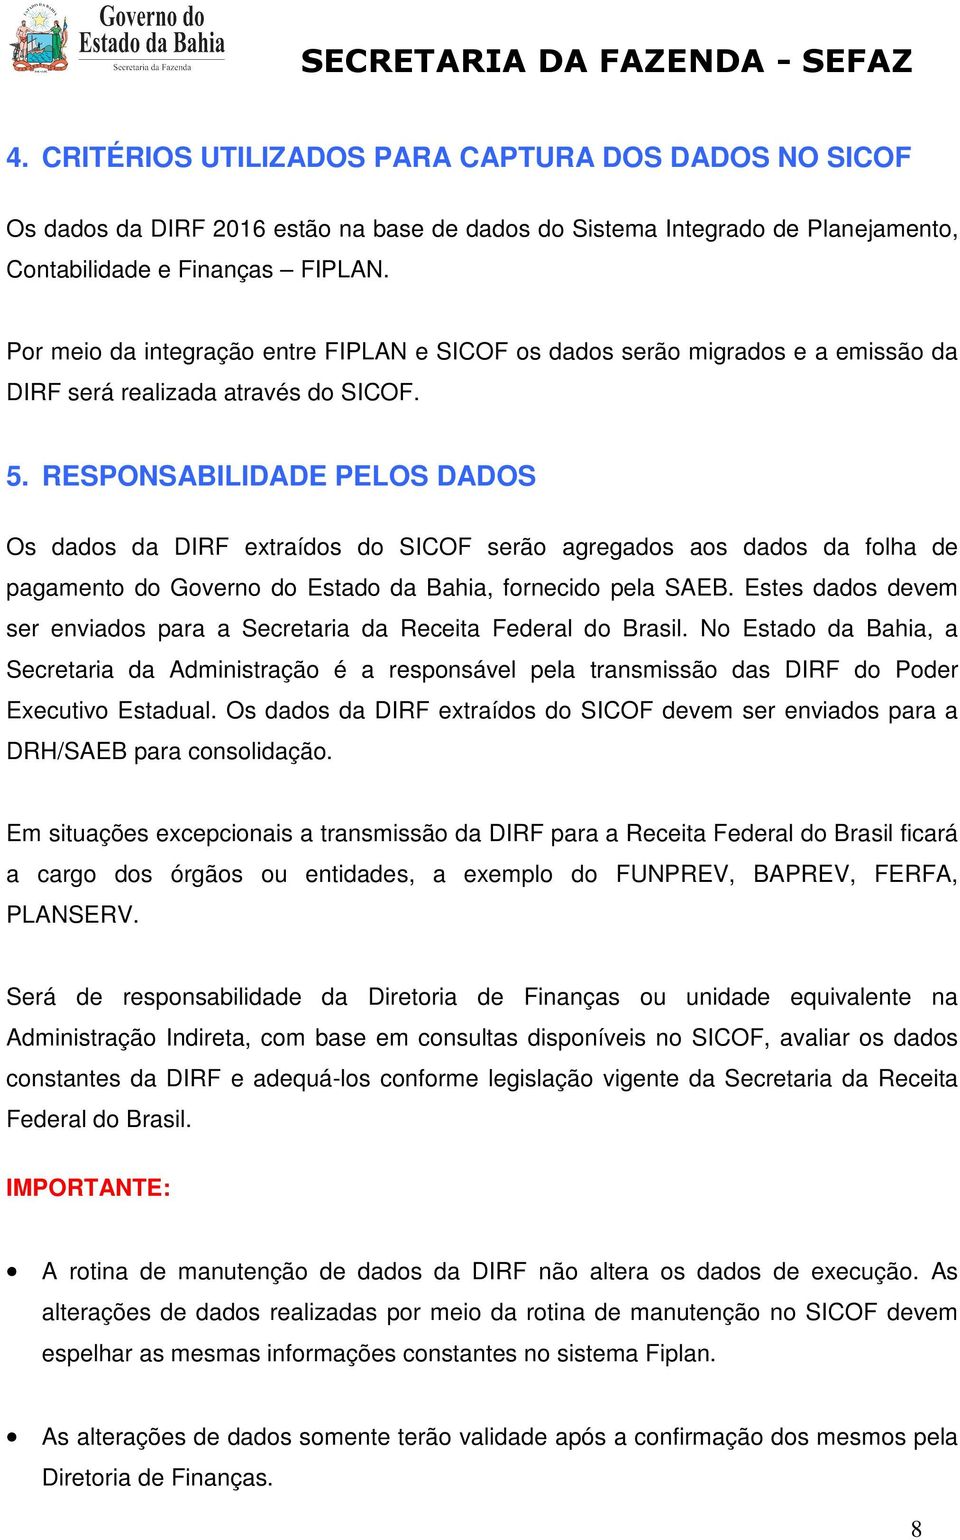 RESPONSABILIDADEE PELOS DADOS Os dados da DIRF extraídos do SICOF serão agregados aos dados da folha de pagamento do Governo do Estado da Bahia, fornecido pela SAEB.